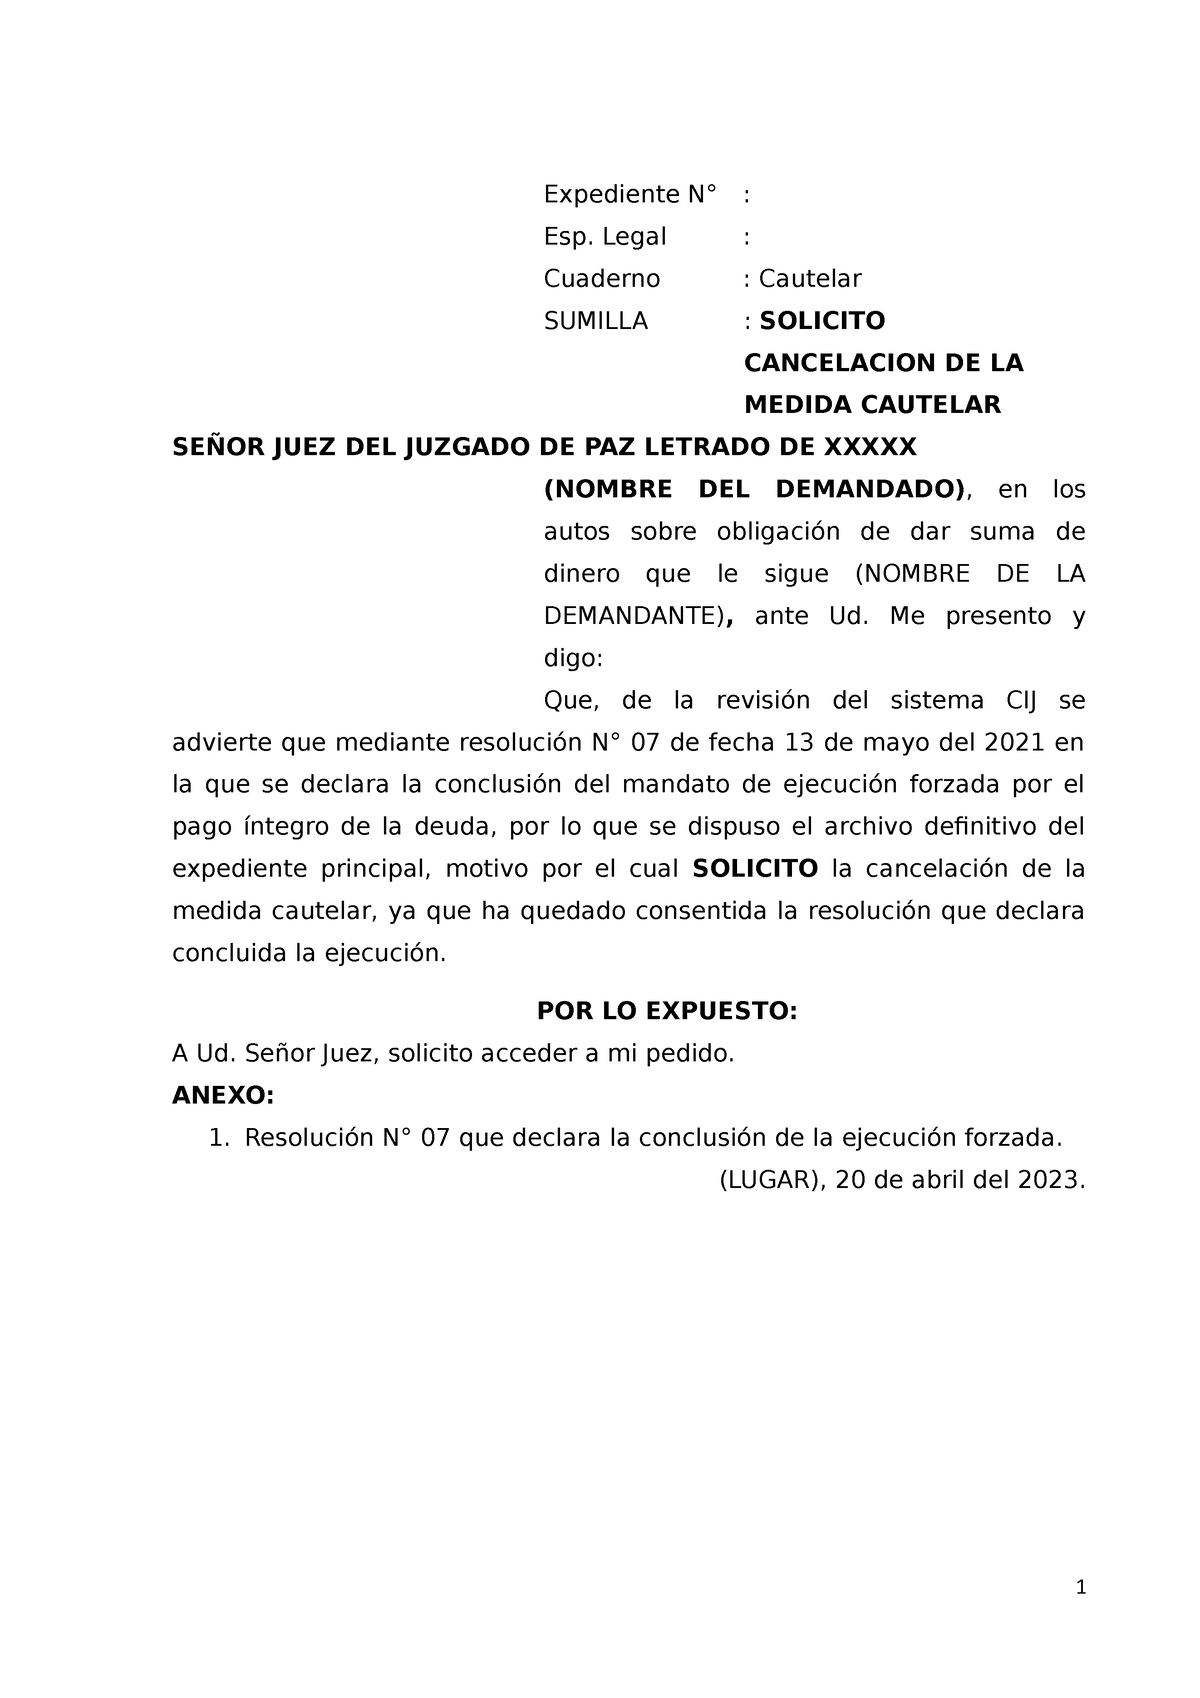 Canclacion DE Medida Cautelar - Expediente N° : Esp. Legal : Cuaderno ...